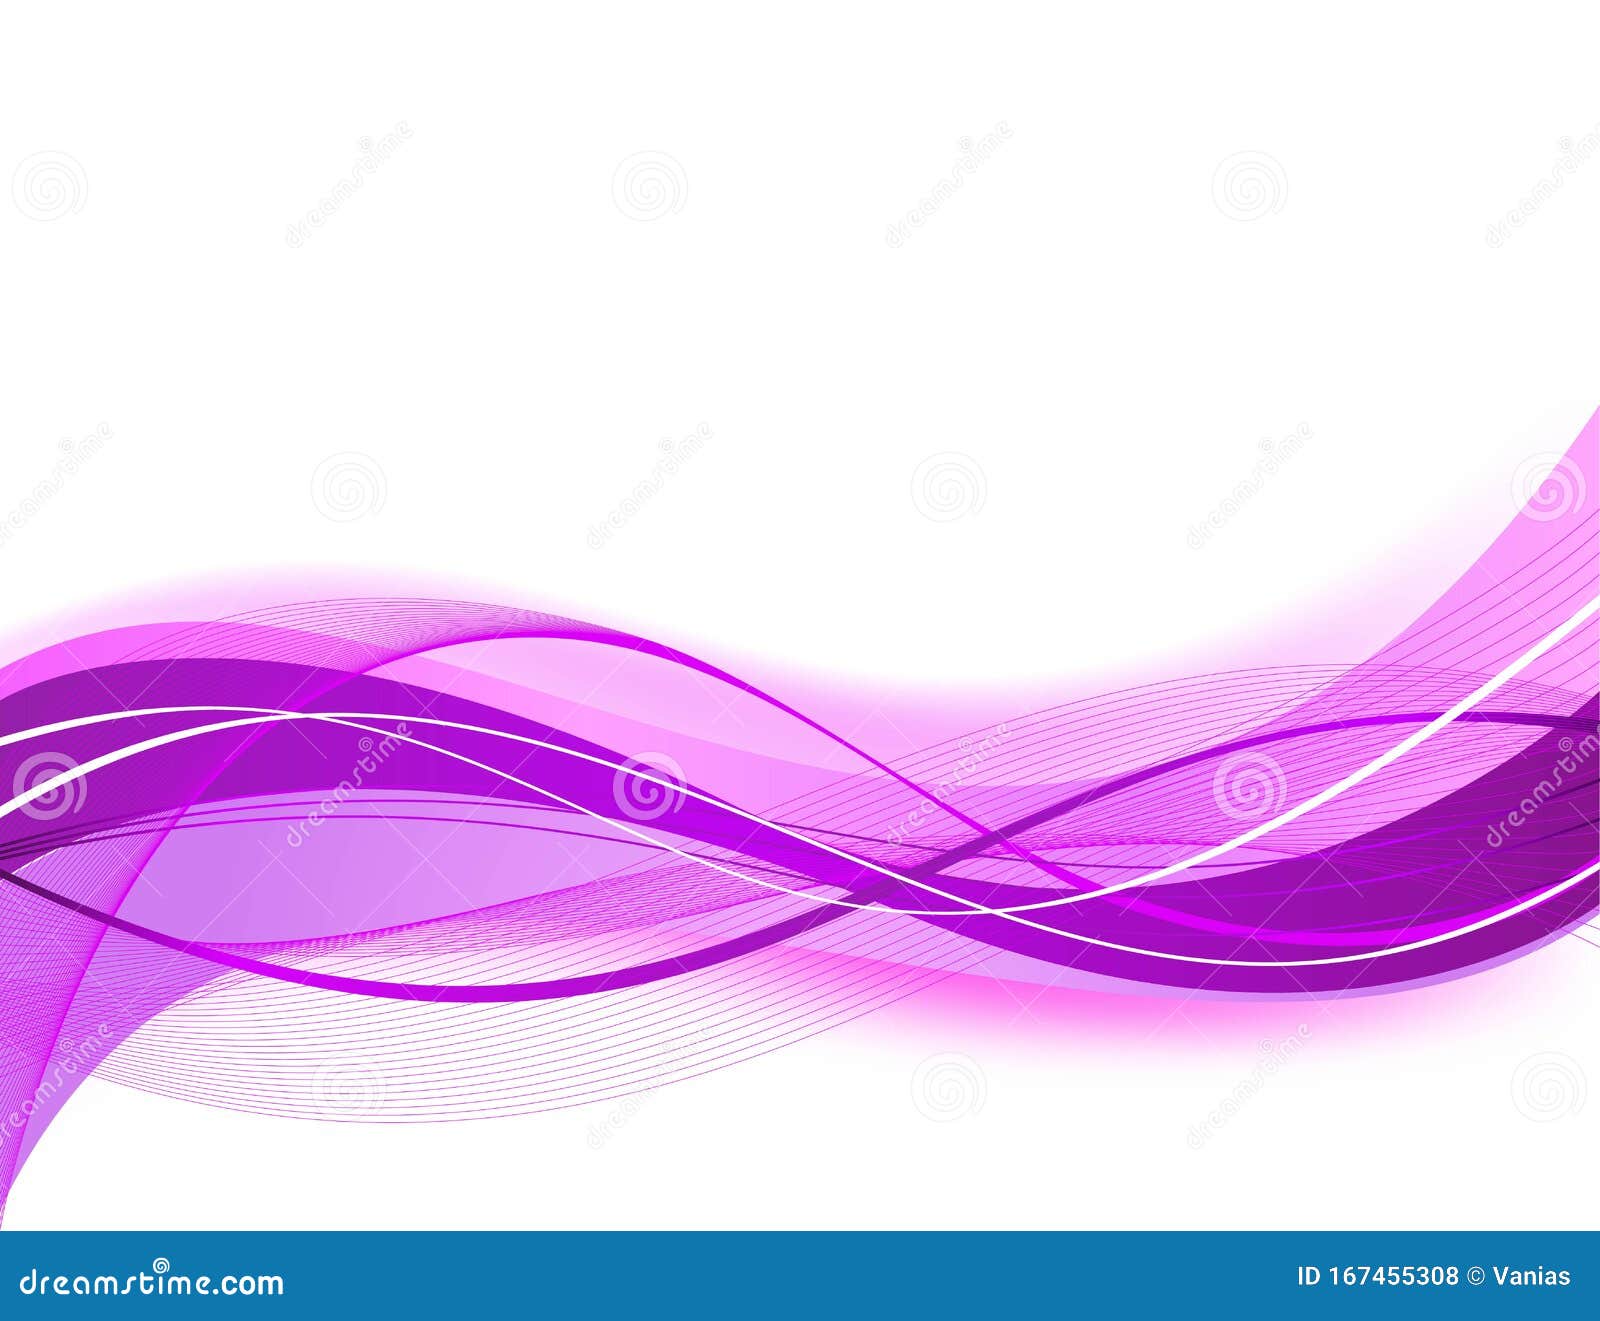 Tổng hợp 999+ Vector background purple pink Cực kỳ đẹp mắt, phù hợp với nhiều mục đích sử dụng